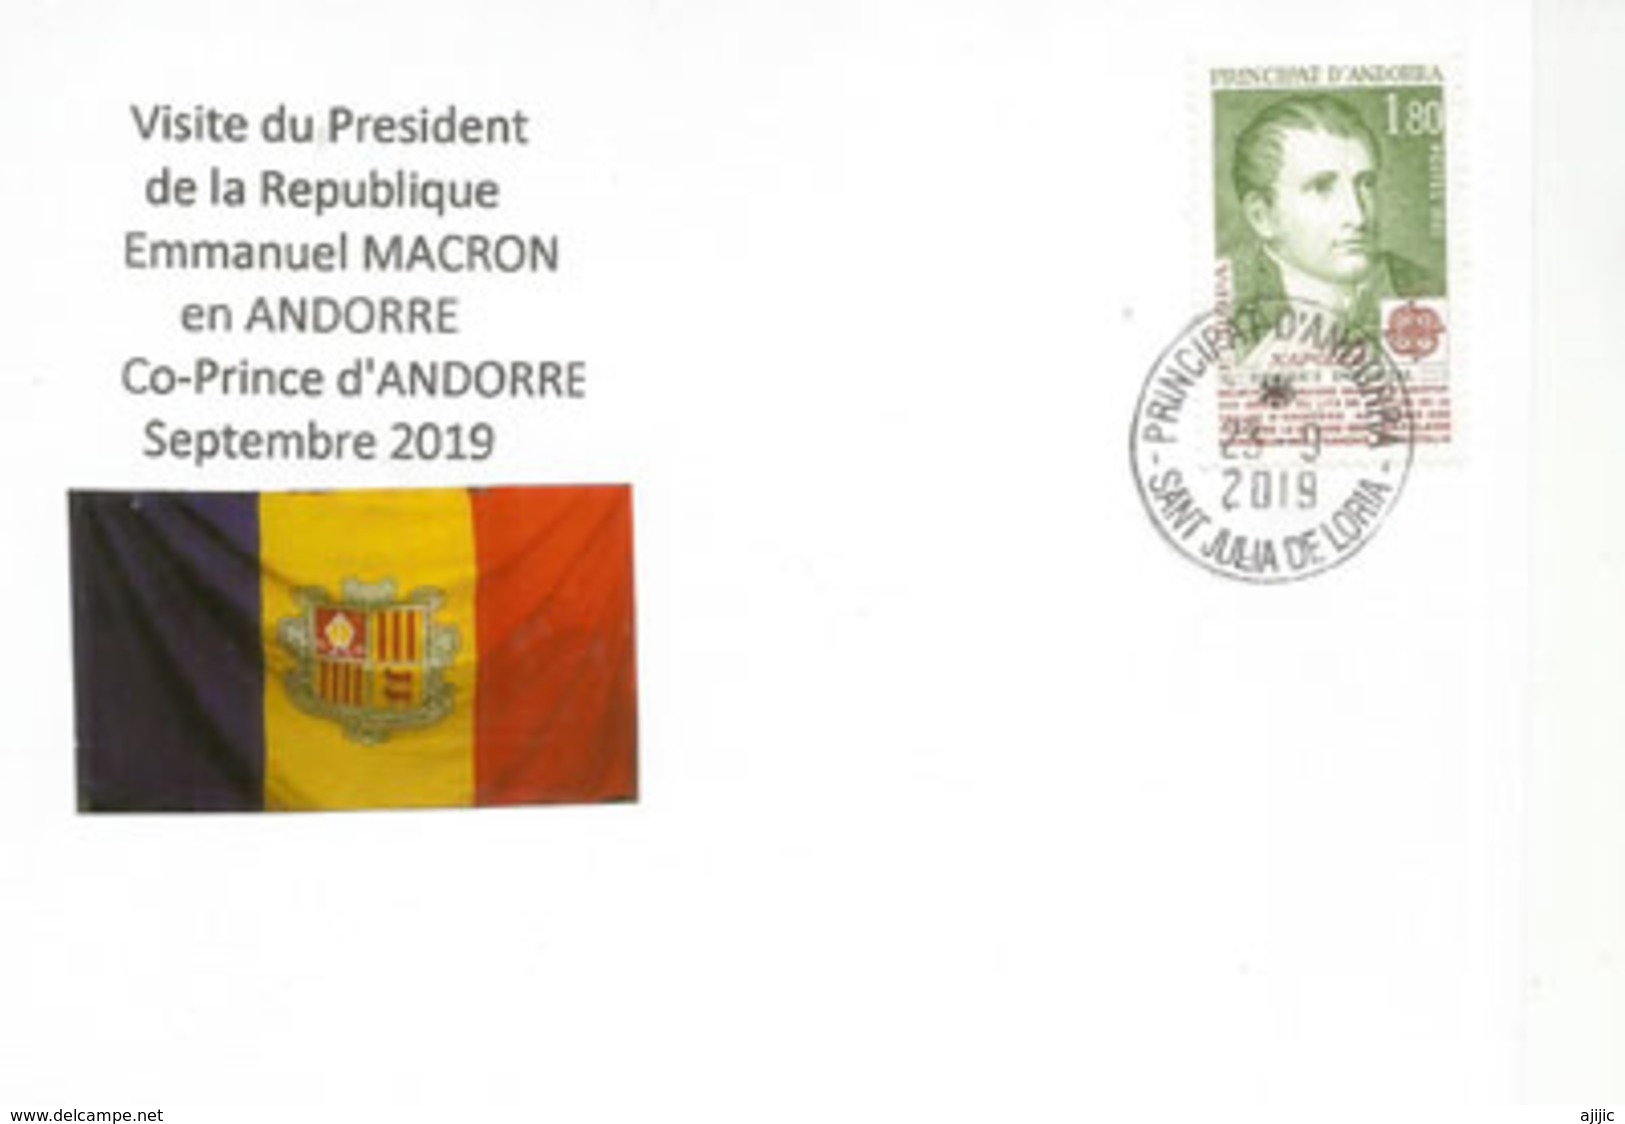 Rencontre Des 2 Co-Princes D'Andorre: L'Évêque D'Urgell Joan Enric Vives & E.Macron,Septembre 2019, Andorra - - Covers & Documents